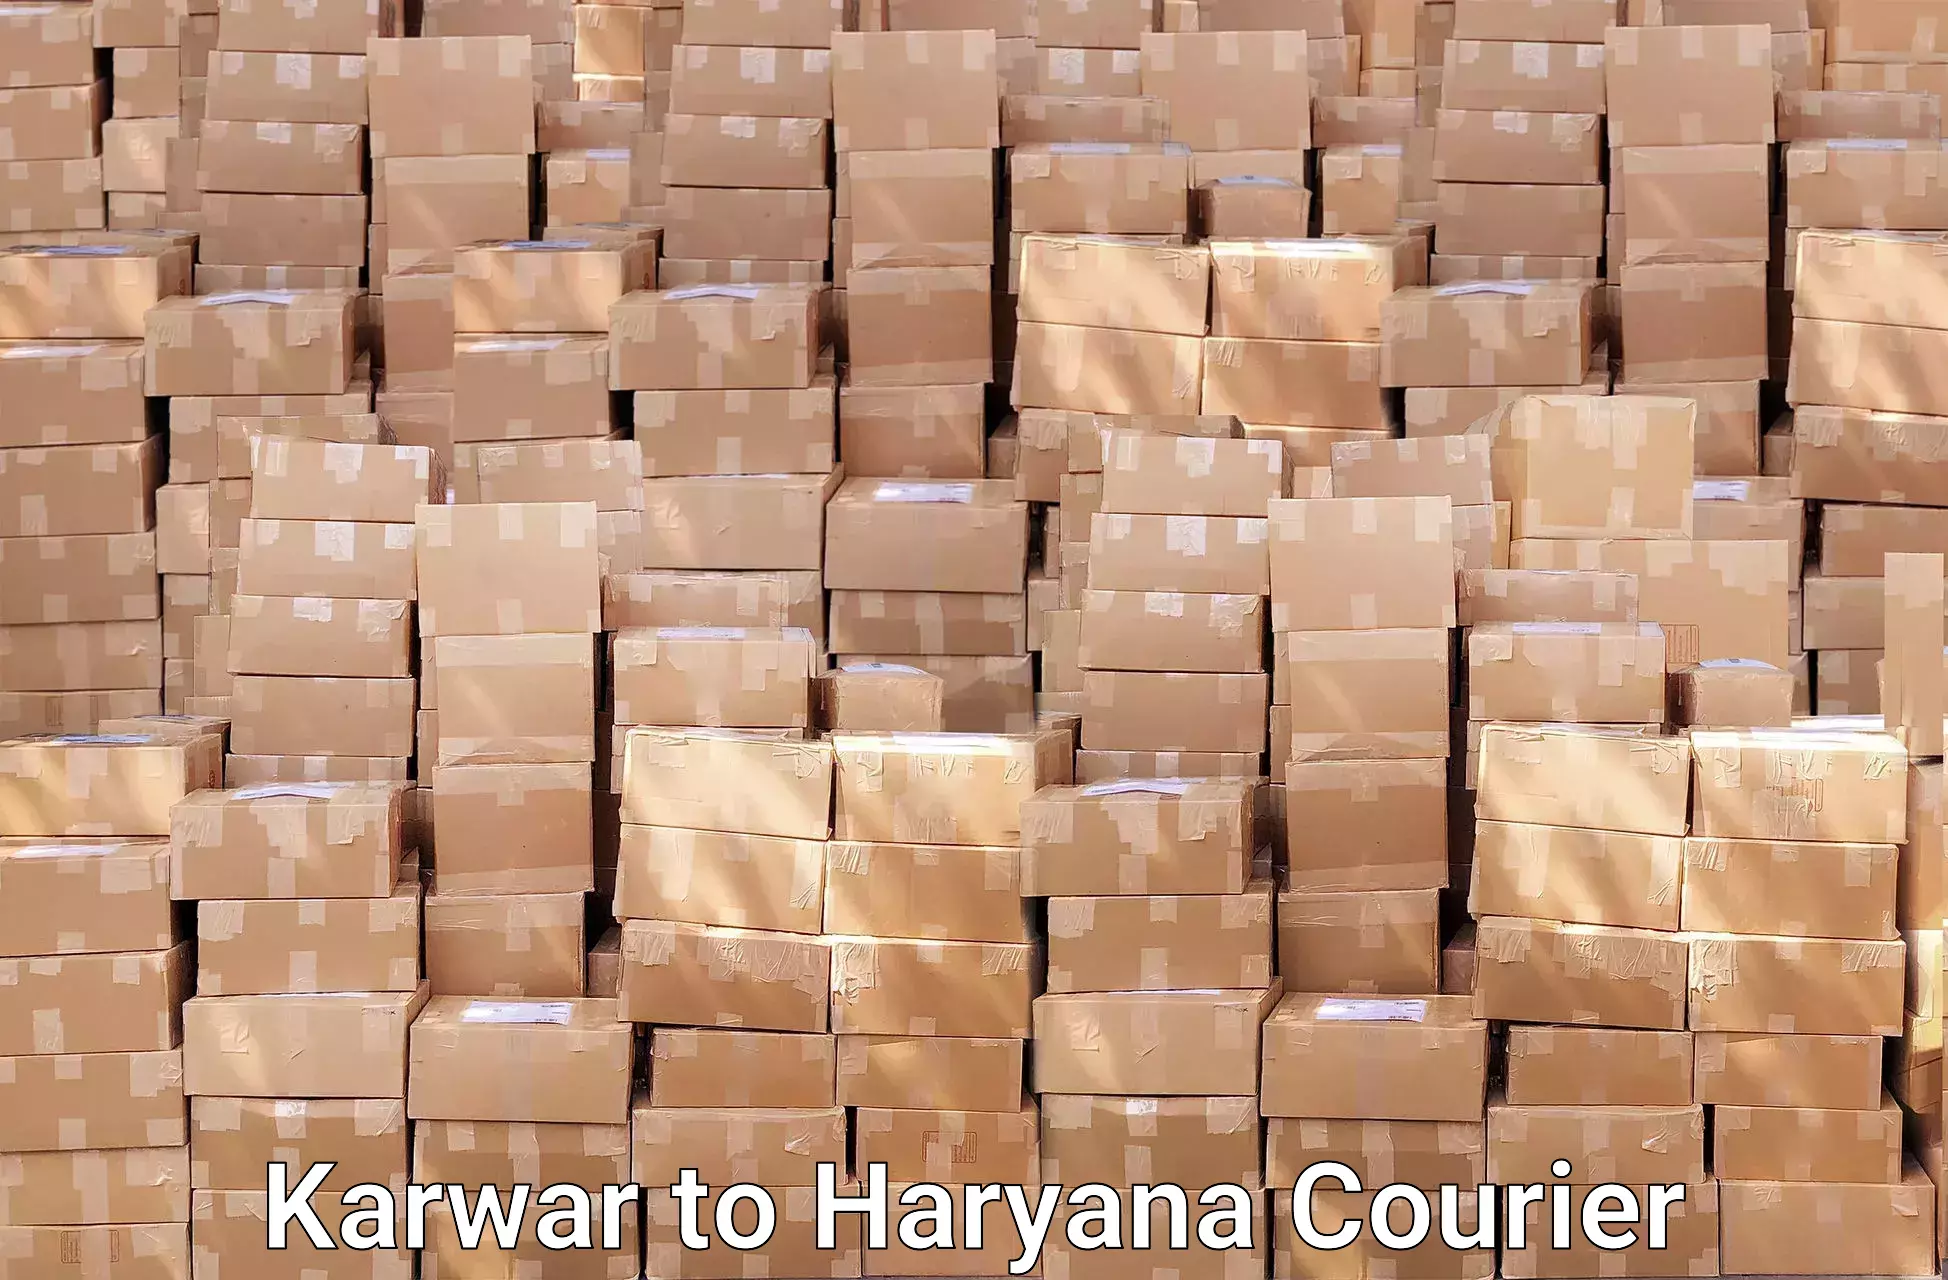 Full-service movers Karwar to Dharuhera